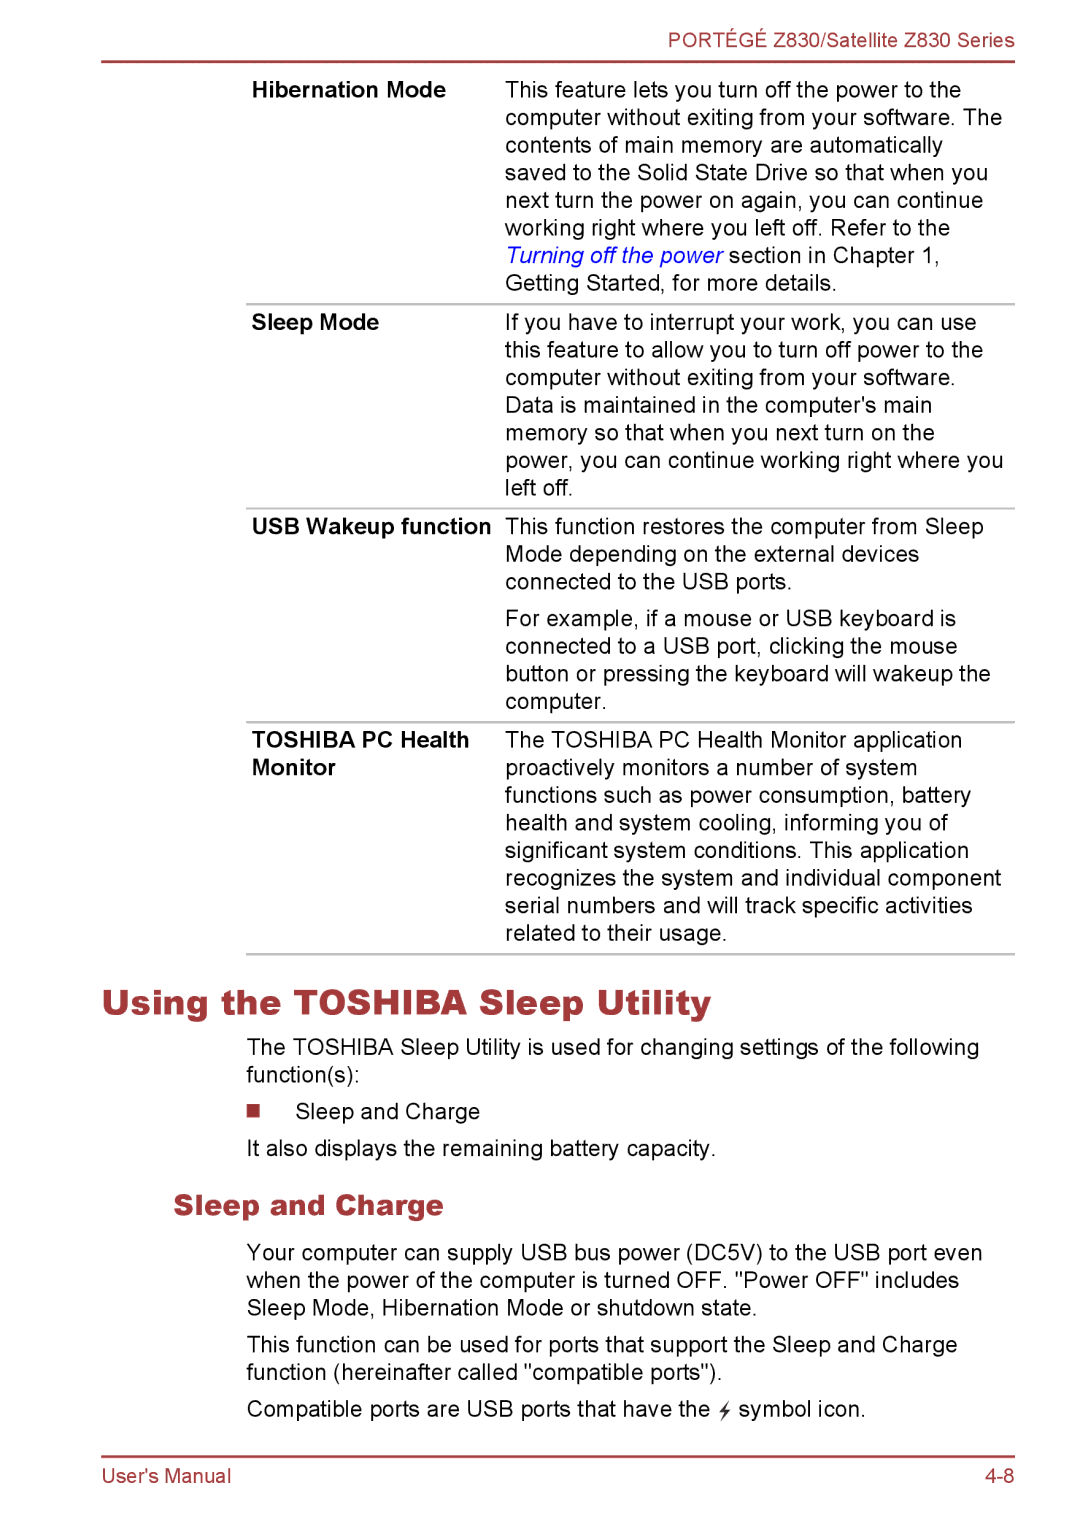 Toshiba Z830 user manual Using the Toshiba Sleep Utility, Sleep and Charge, Hibernation Mode, Sleep Mode 